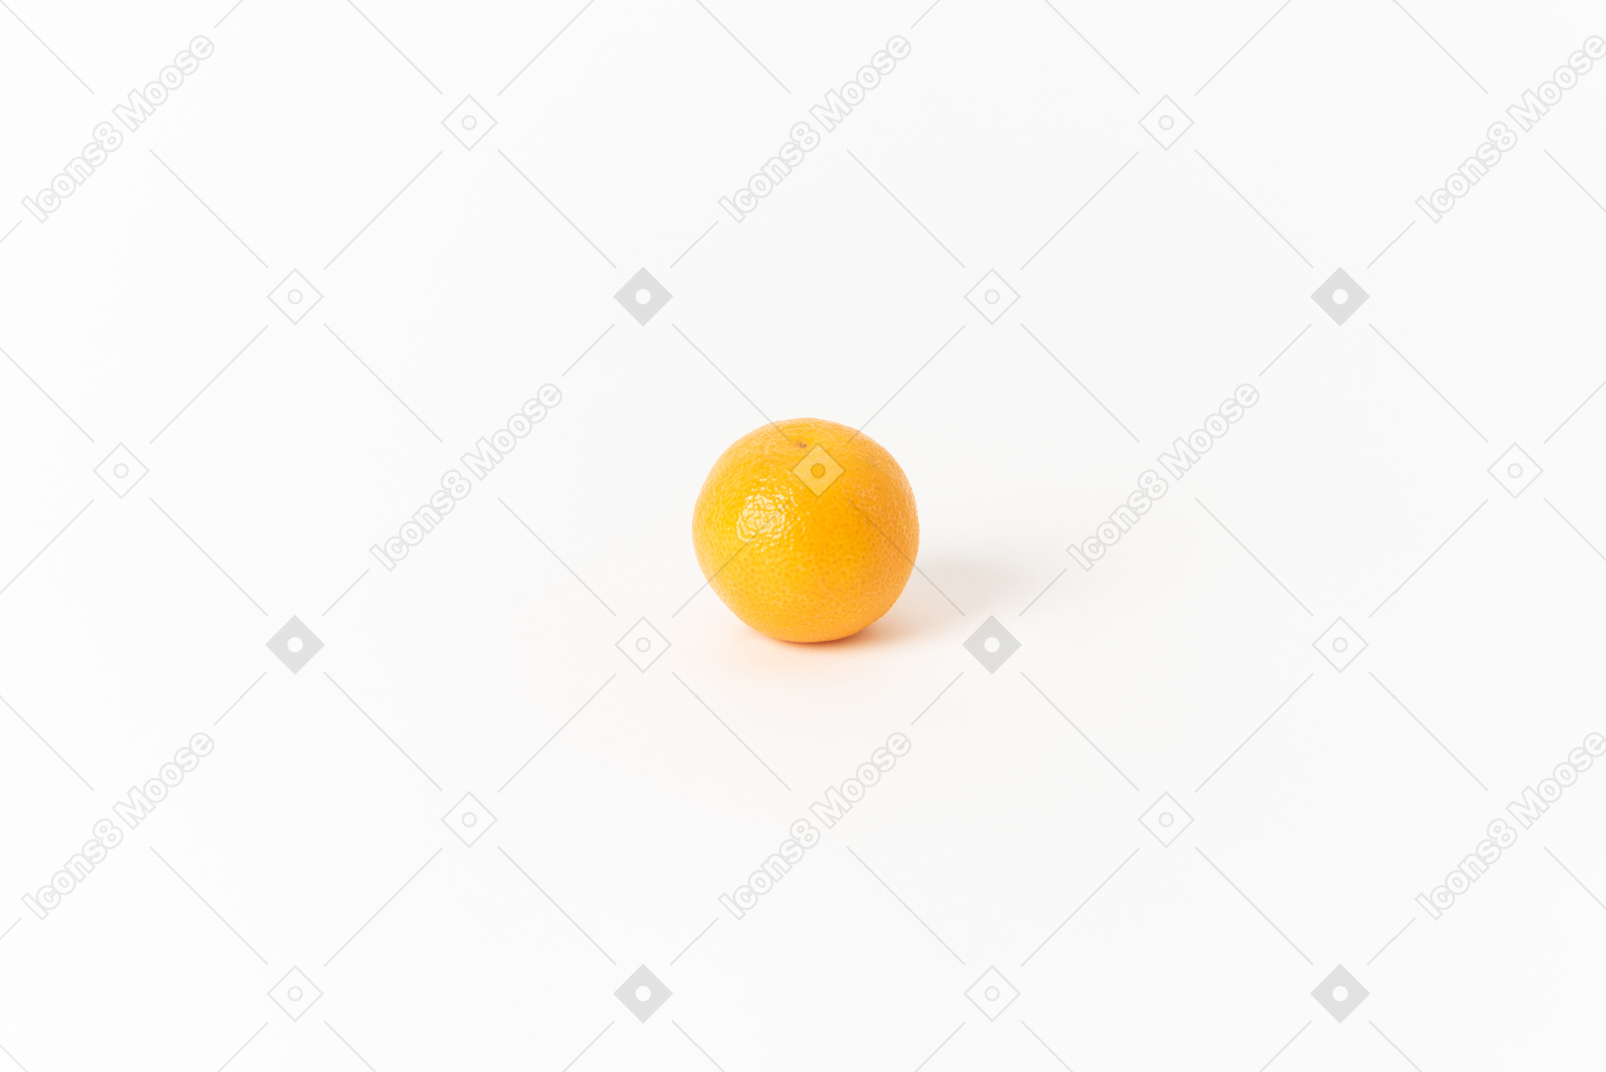 오렌지는 세계에서 가장 인기있는 과일 중 하나입니다